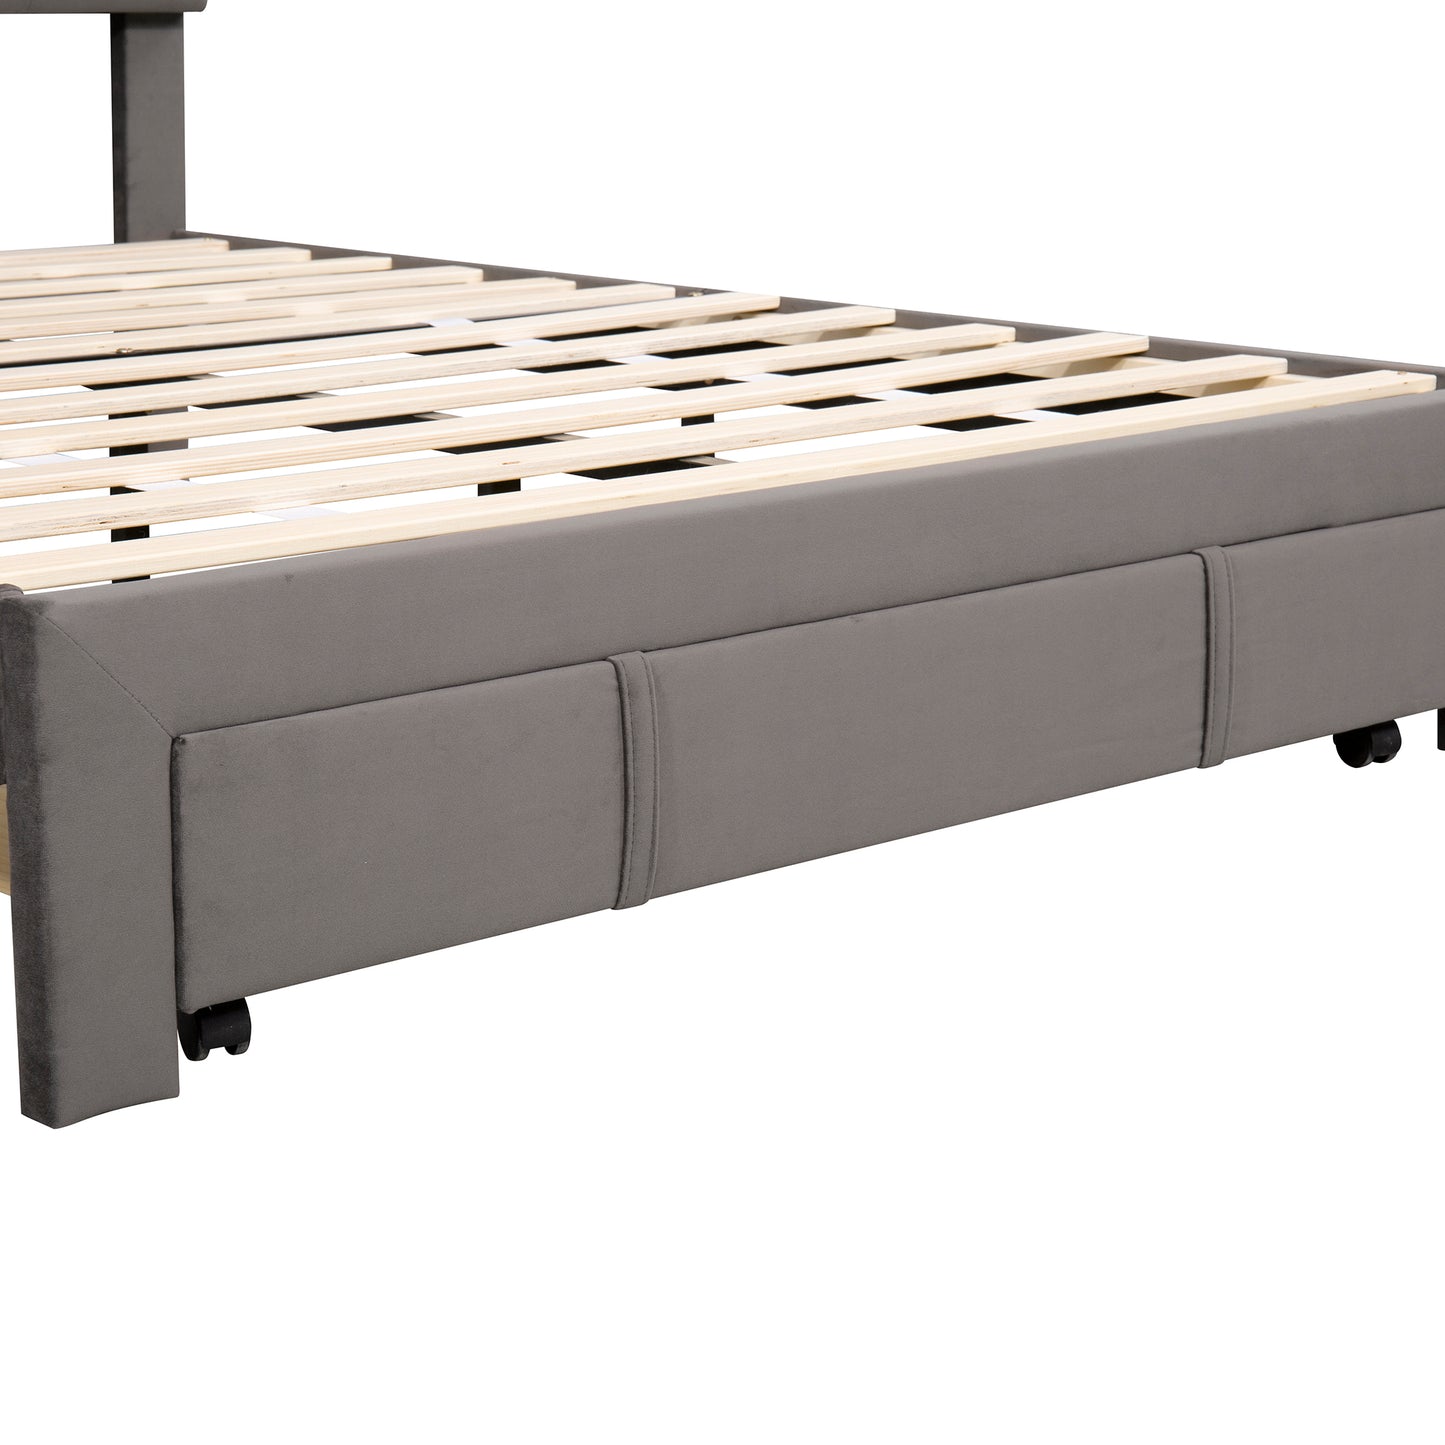 Full Size Storage Bed Velvet Upholstered Platform Bed with a Big Drawer - Grey